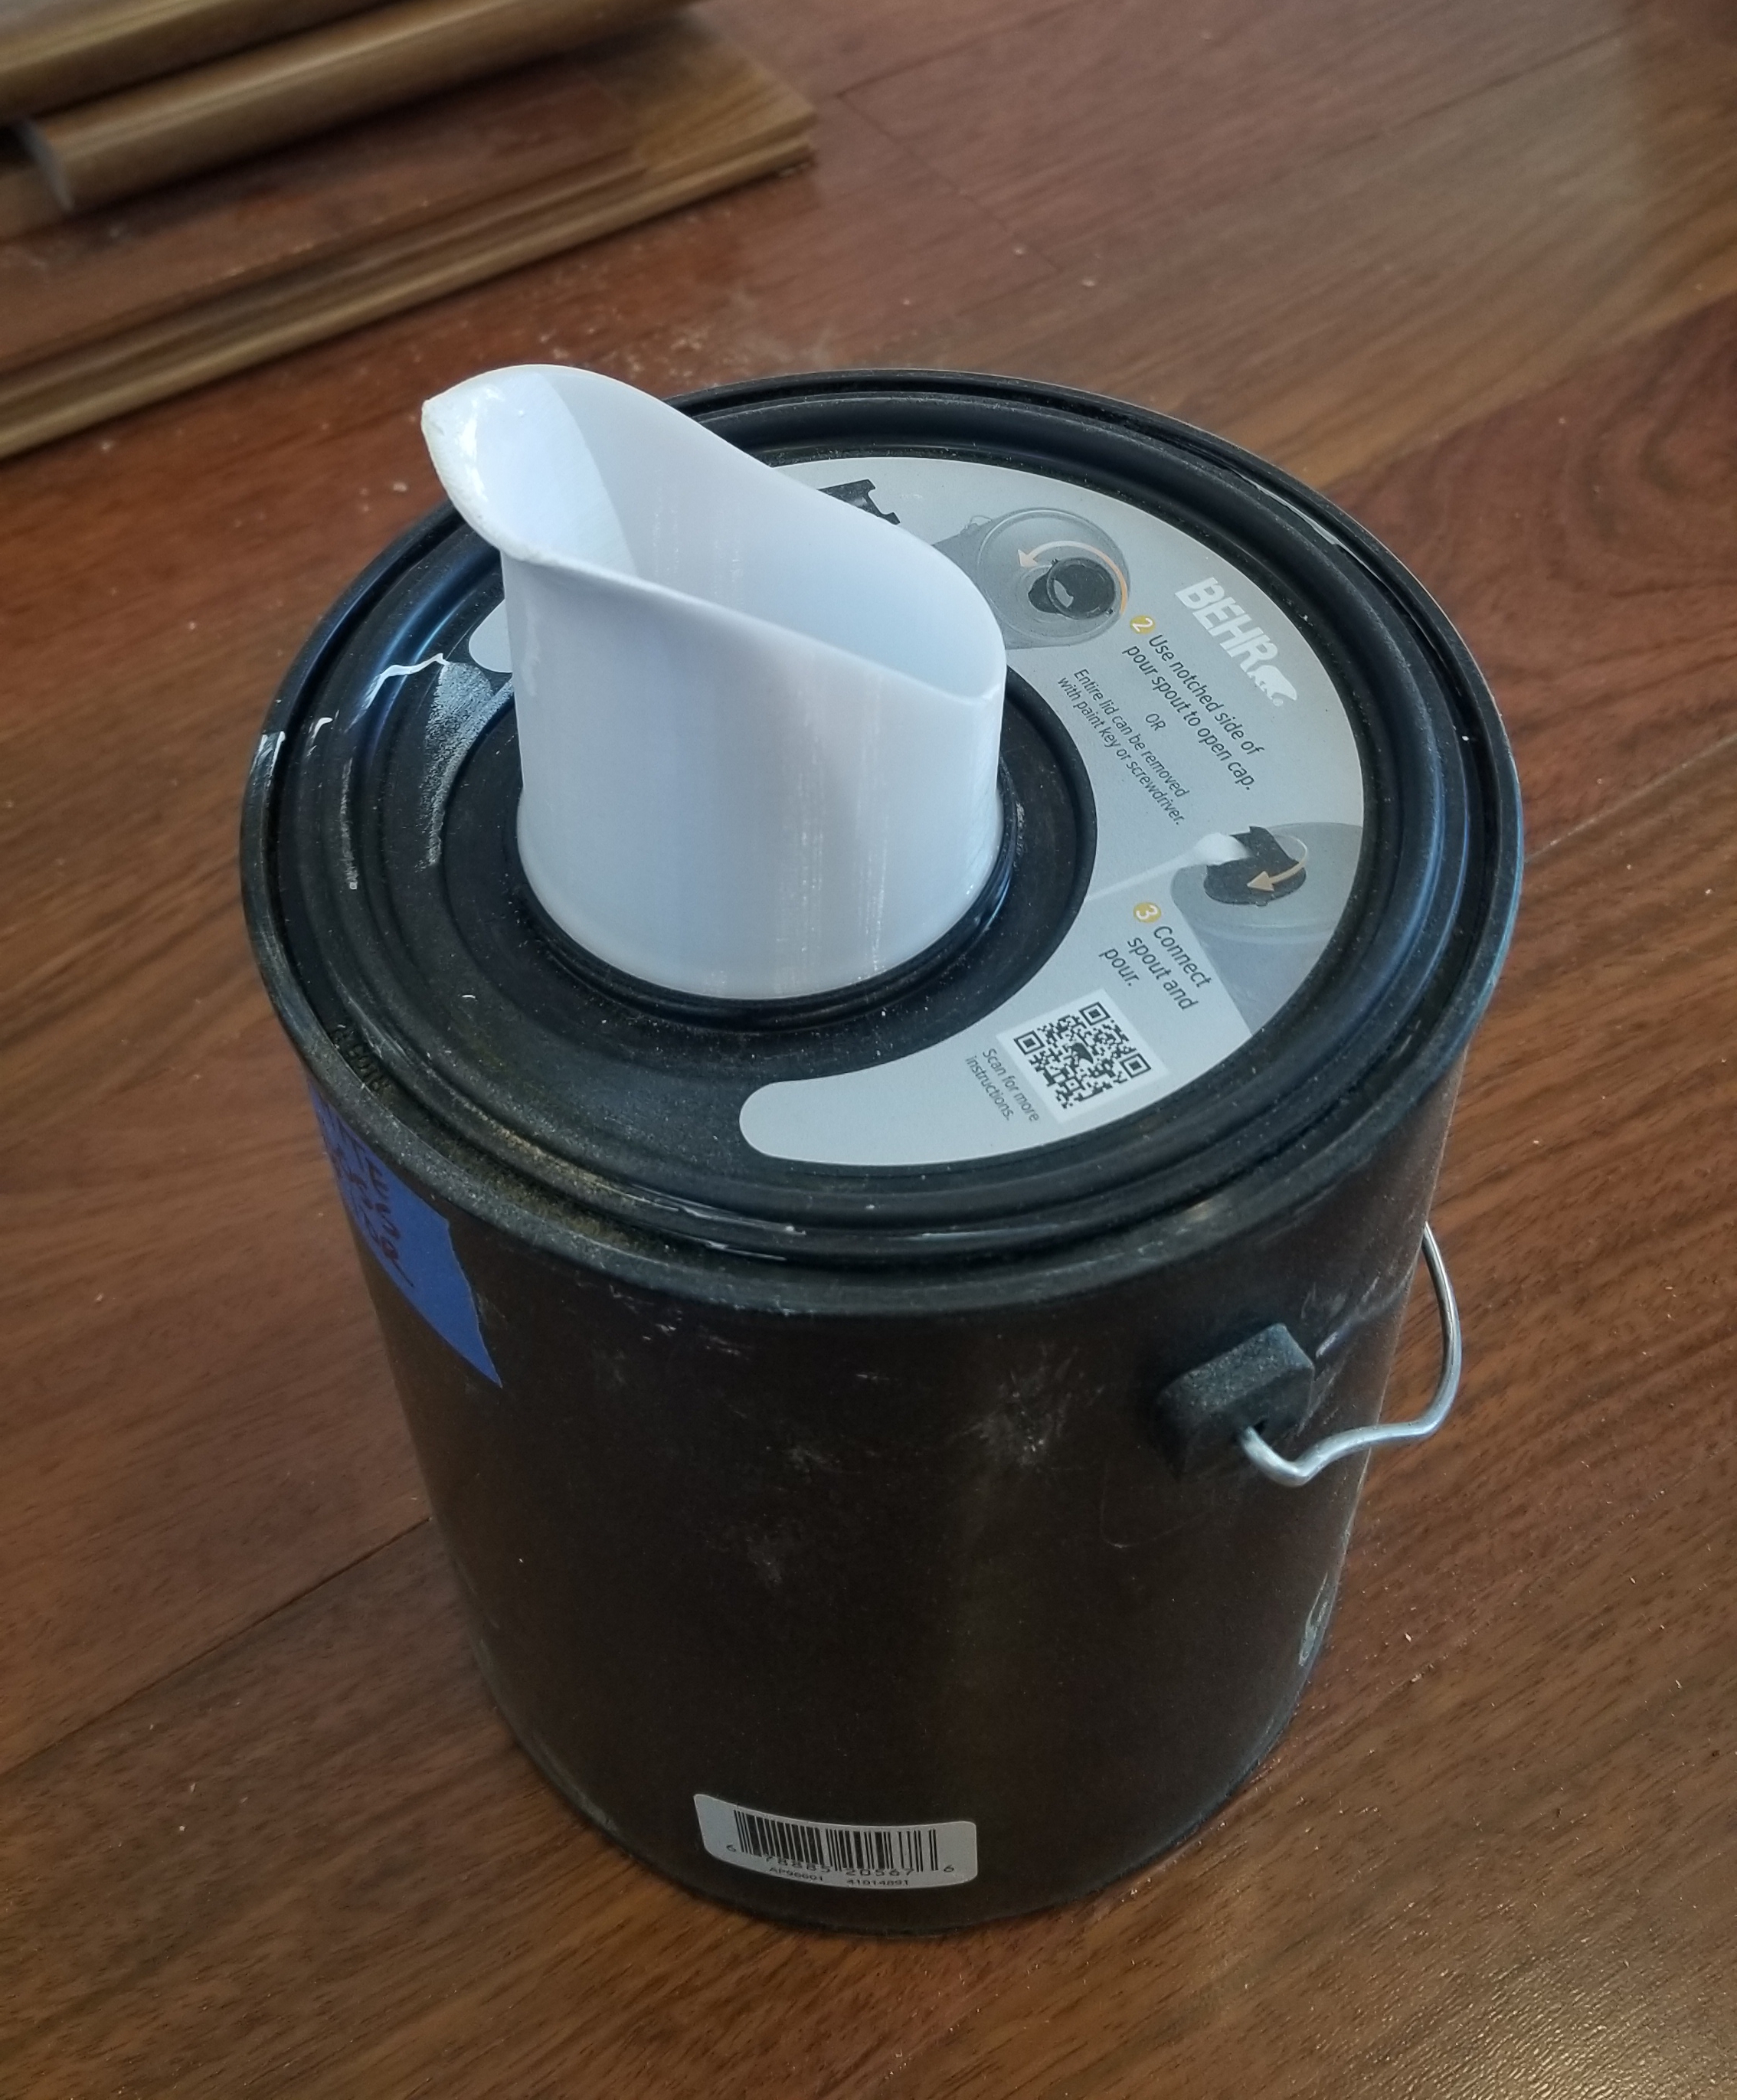 BEHR 1 gal. Empty Plastic Paint Bucket with Pour Spout Lid AP96601